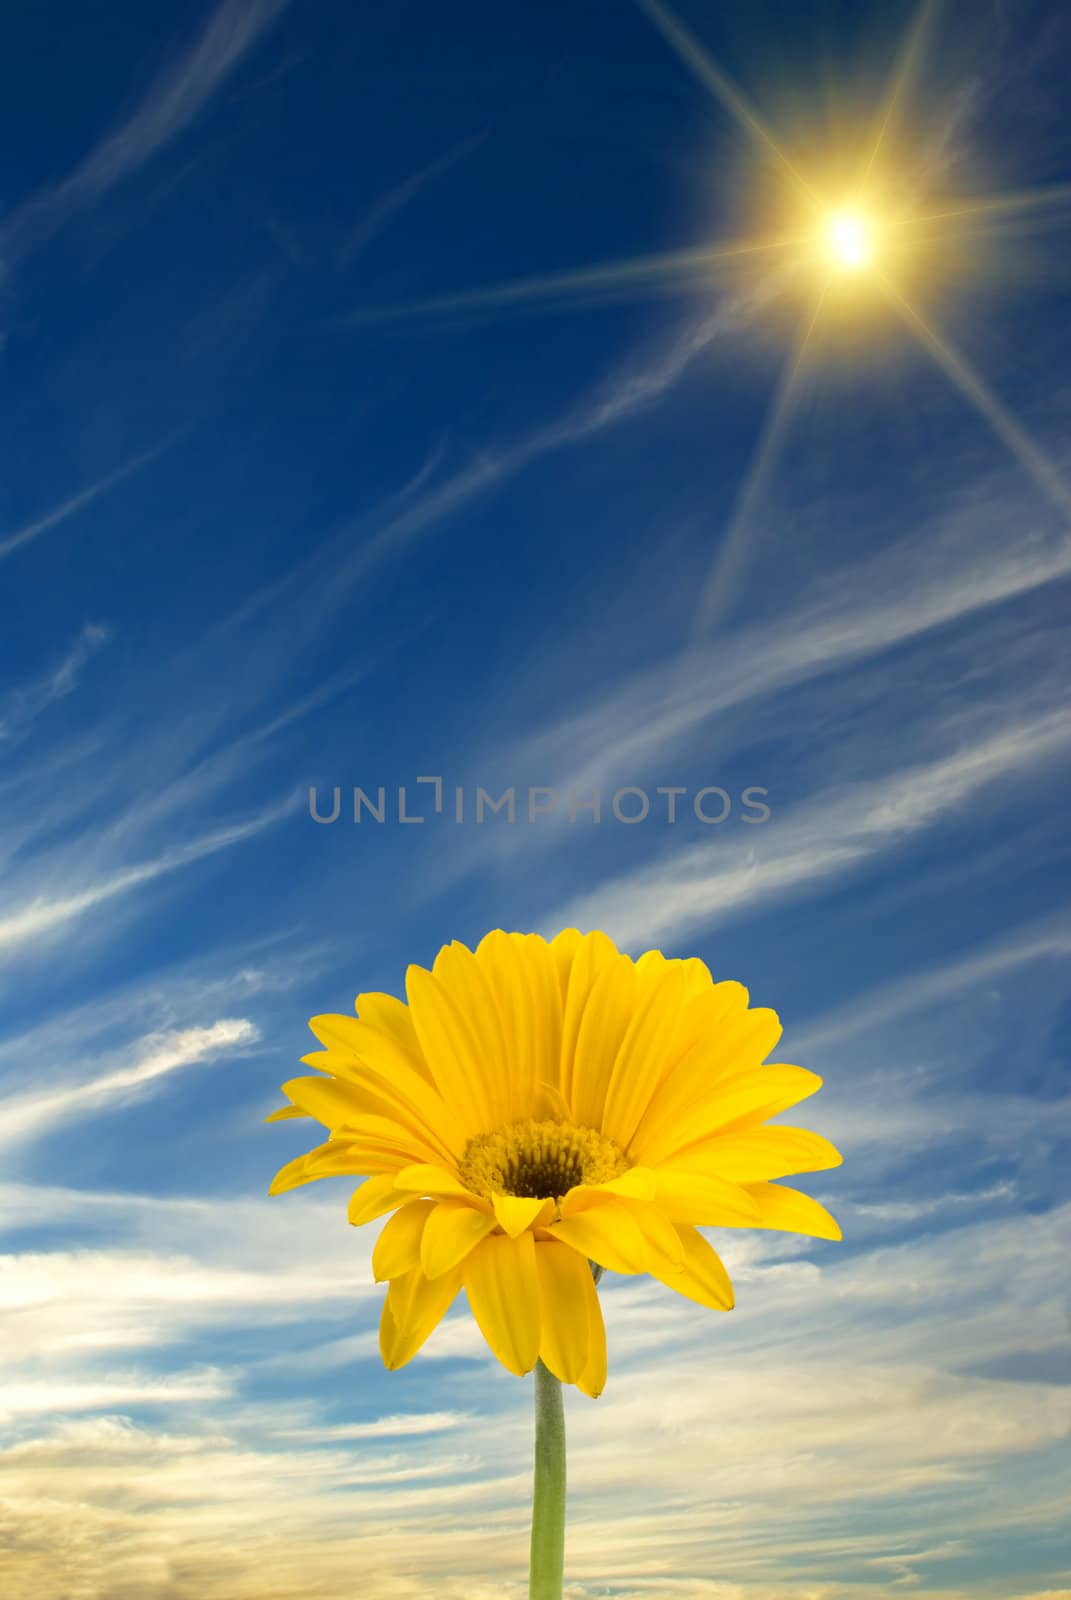 Daisy, sun, and blue sky